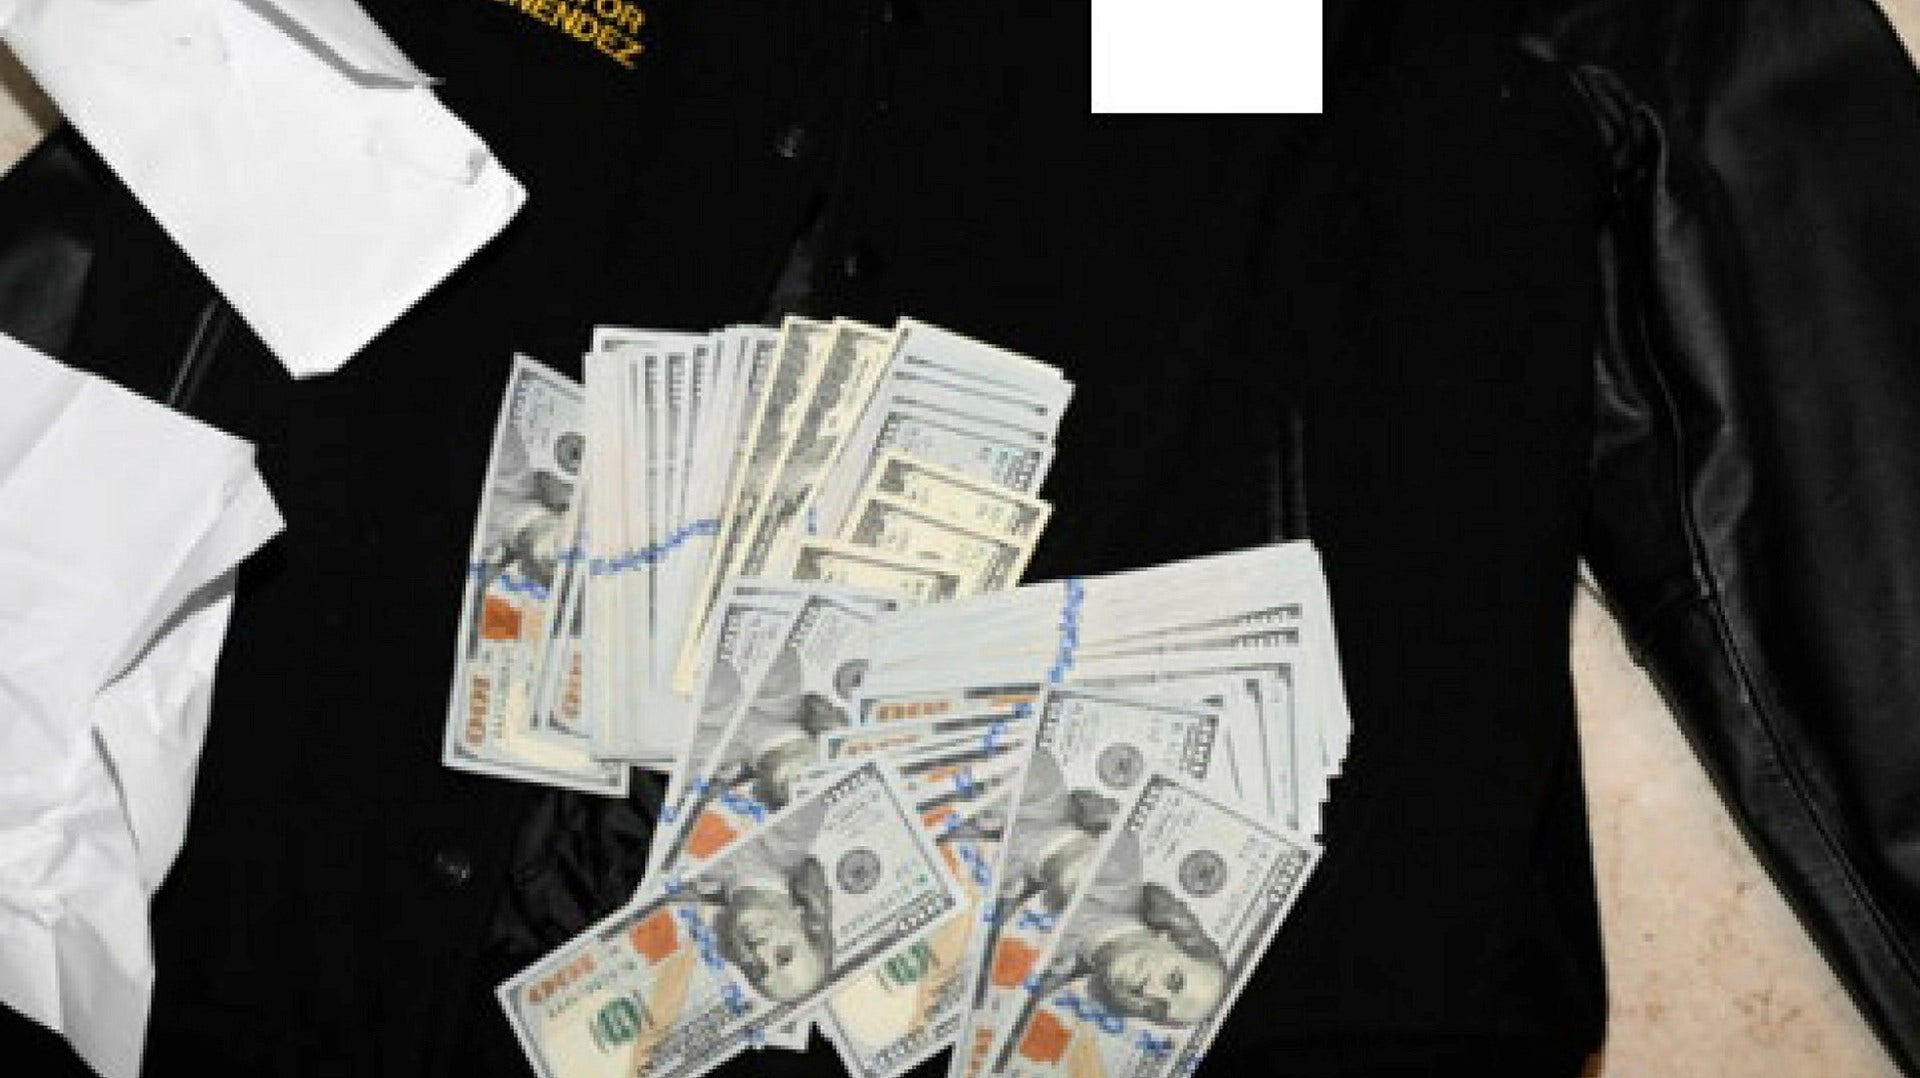 Pengar som hittades gömda i en tröja under husrannsakan hemma hos senatorn. Det är andra gången Bob Menendez åtalas för mutbrott. Förra gången, 2017, friades han i rätten.